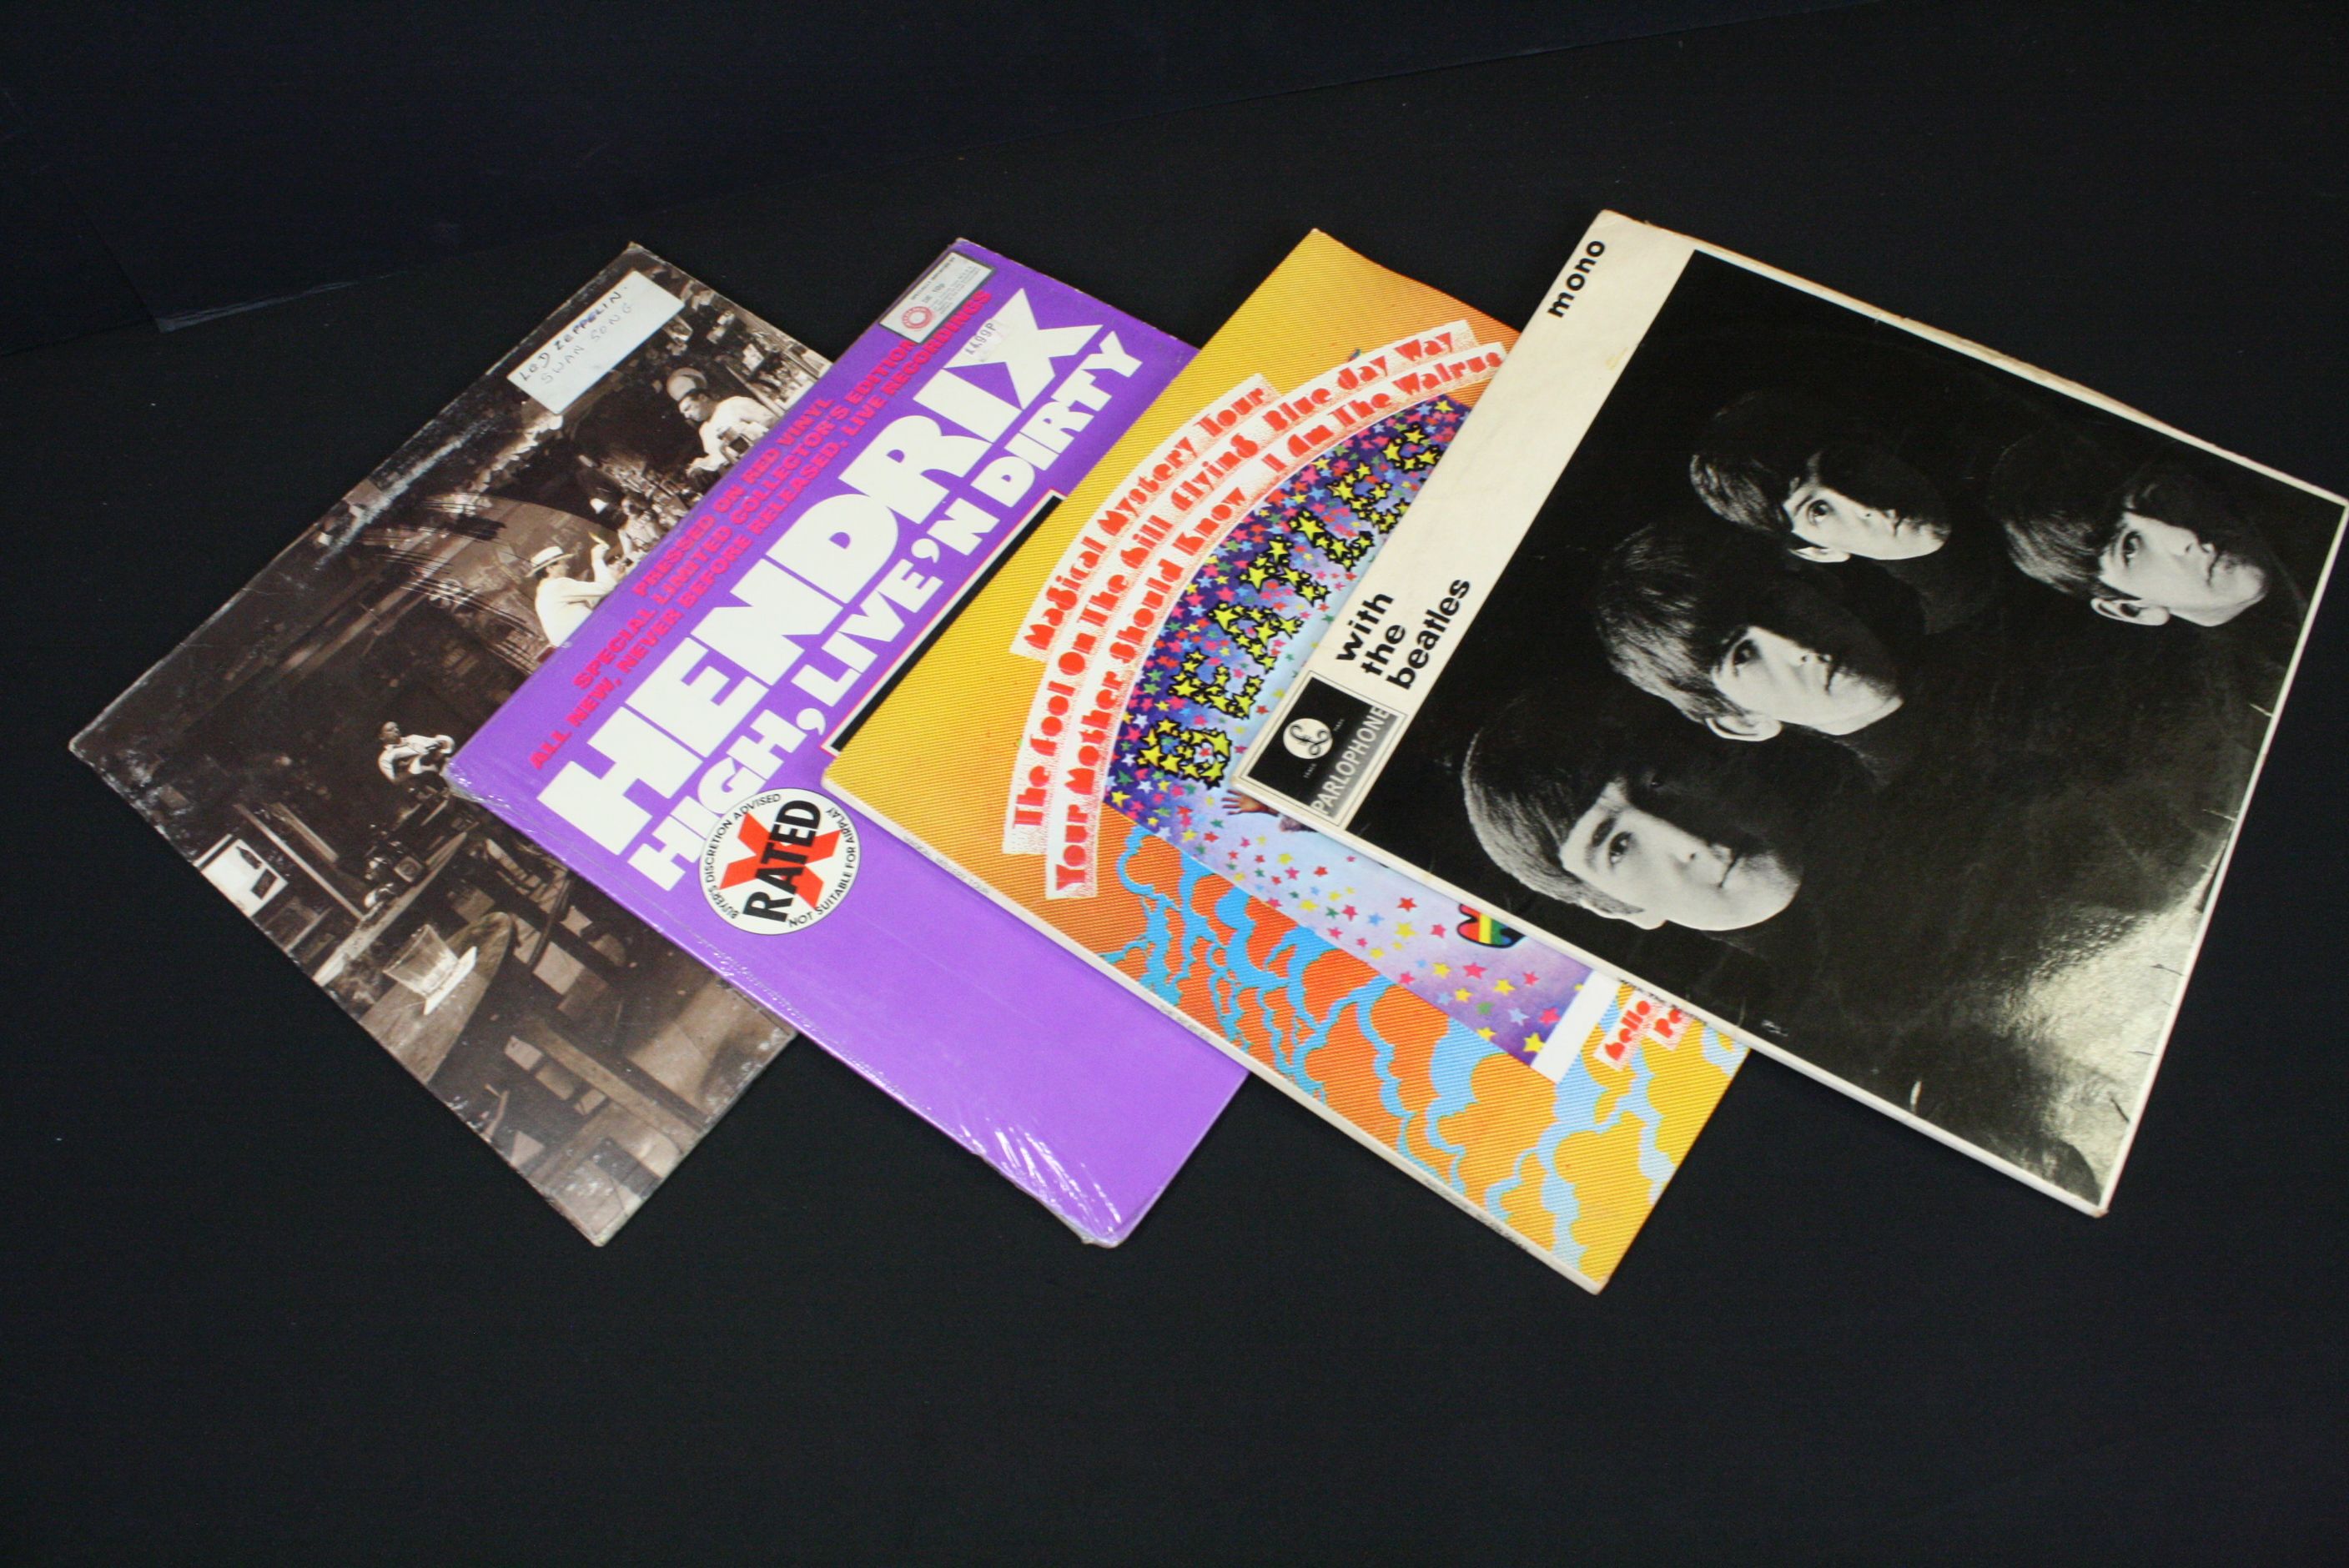 Vinyl - Over 30 Rock & Pop LPs & 12" singles to include Fleetwood Mac, Led Zeppelin, The Beatles, - Image 2 of 7